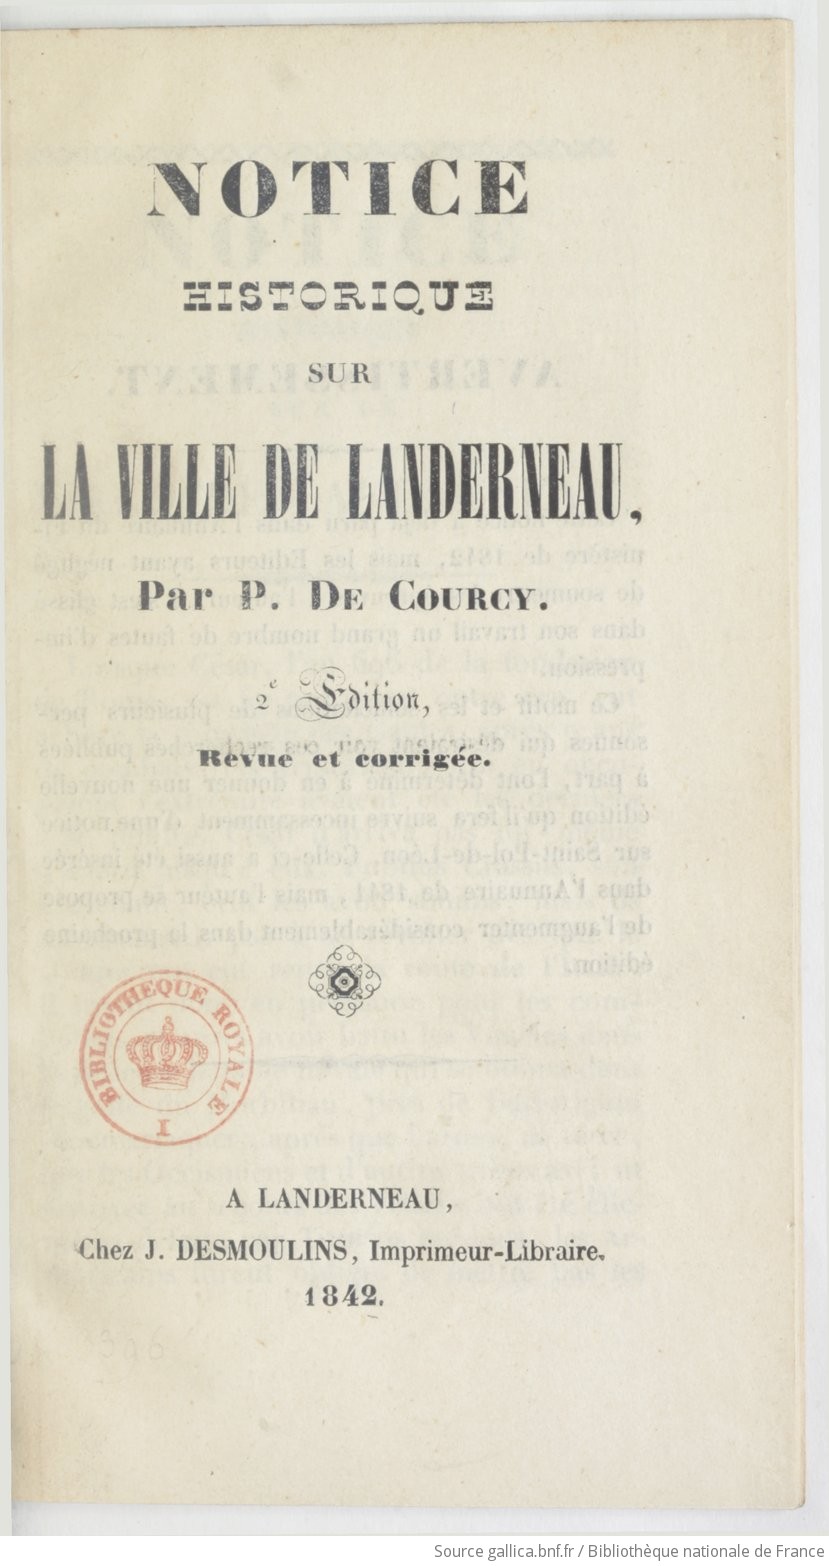 Notice historique sur la ville de Landerneau (2e édition, revue et corrigée) / par P. de Courcy | Potier de Courcy Pol